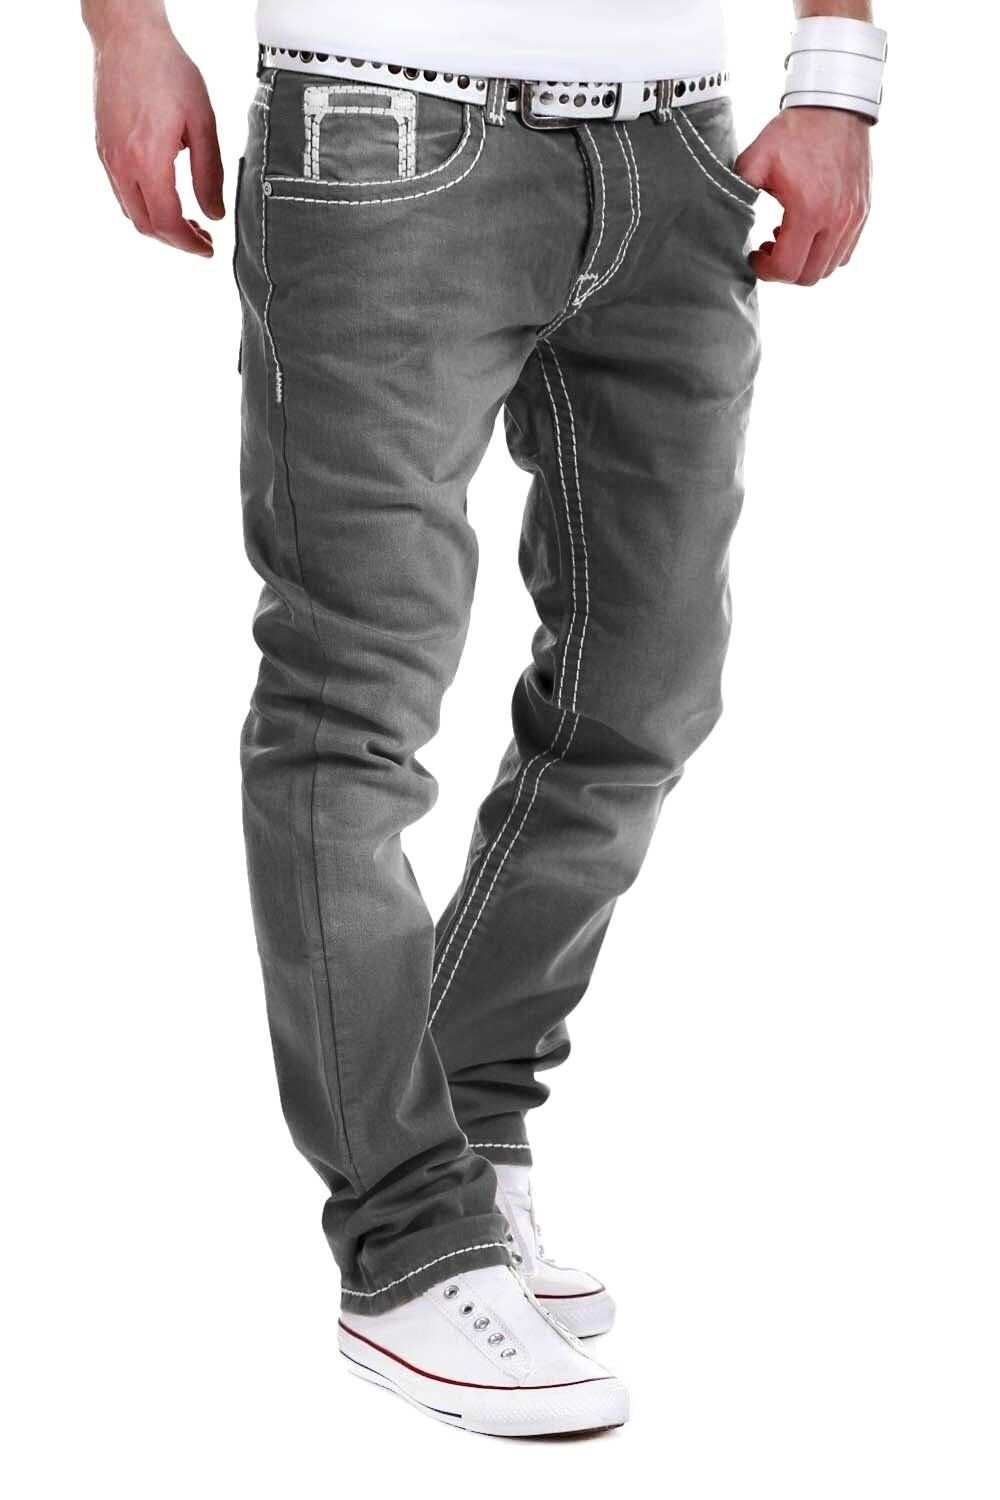 behype Bequeme Jeans Stitch mit dicken Kontrastnähten grau